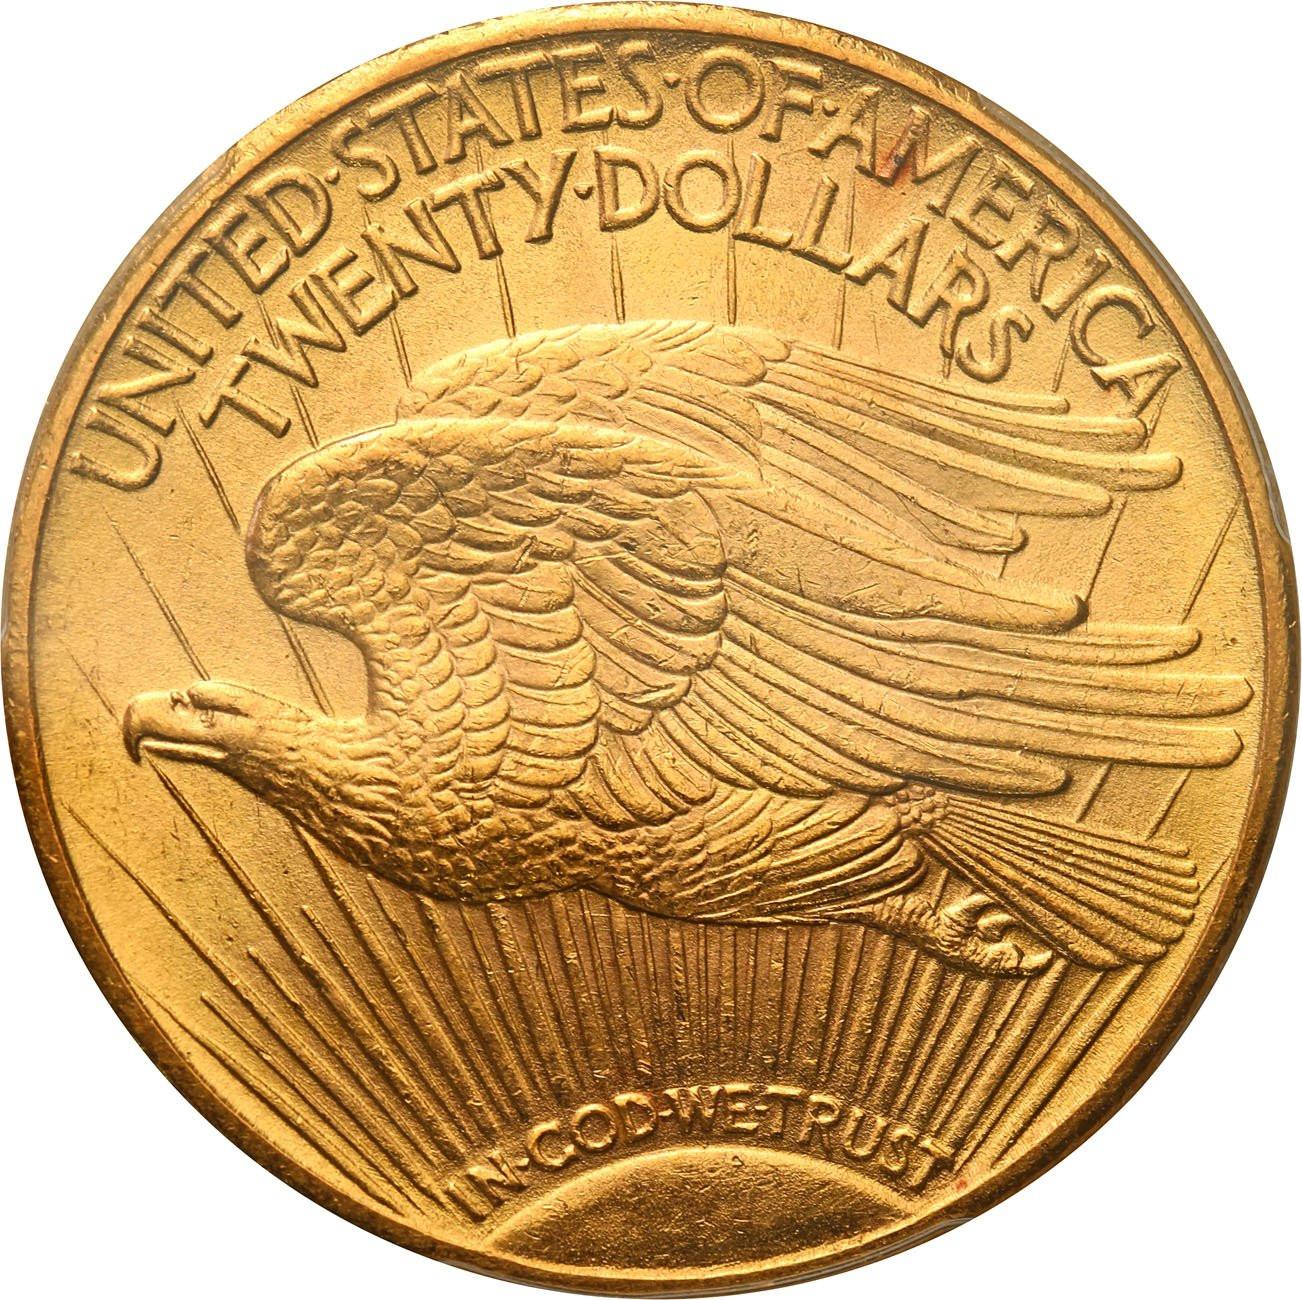 USA 20 dolarów 1924 Filadelfia PCGS MS64